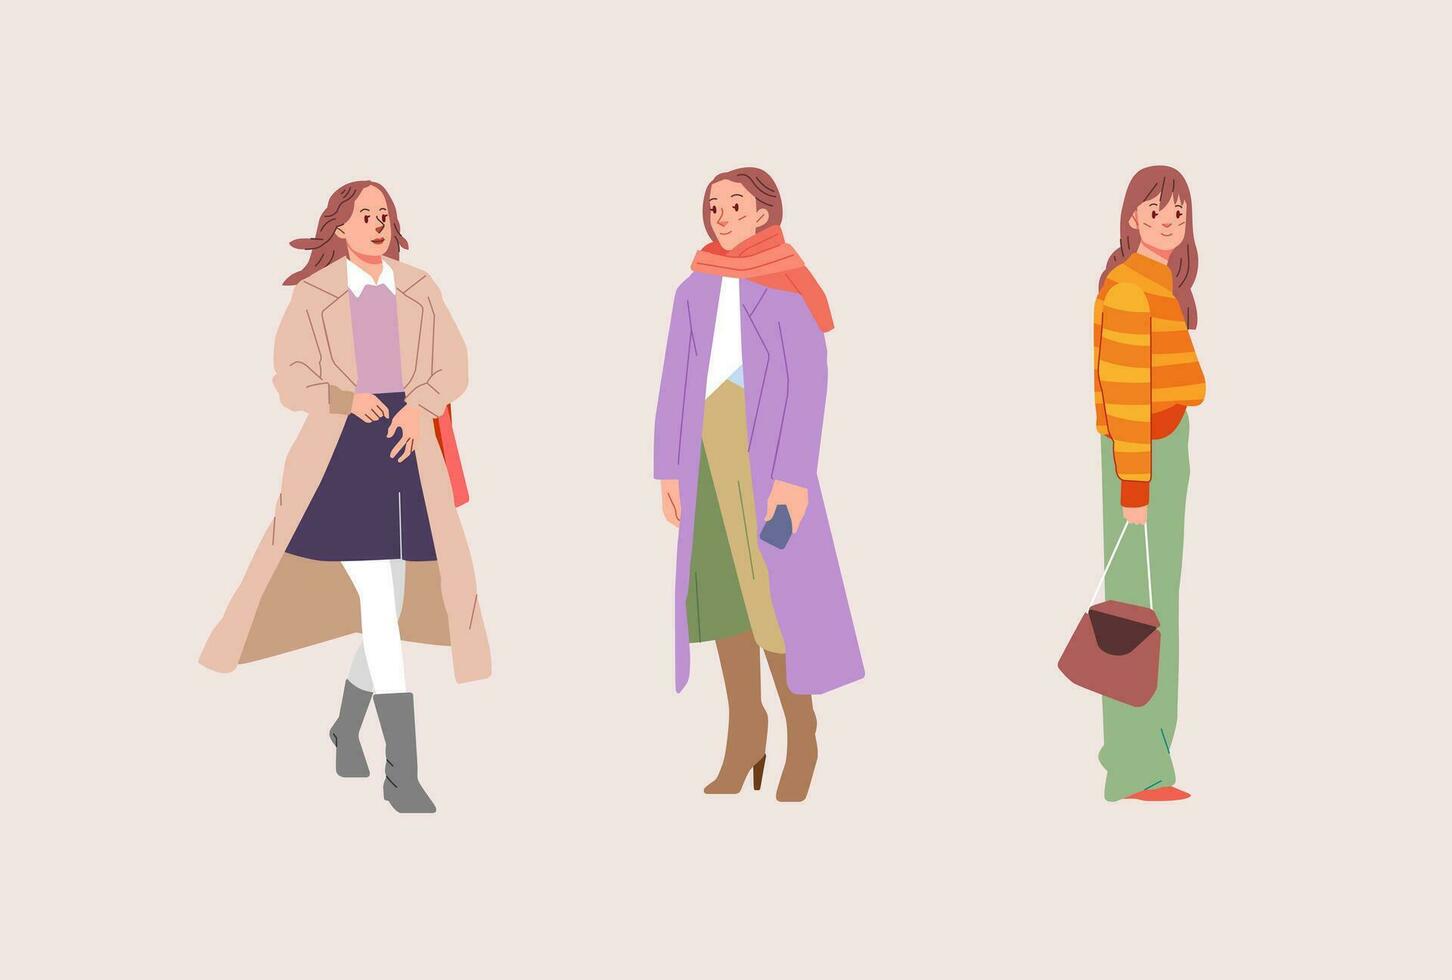 de moda frio joven moderno mujer en de moda ropa atuendo. casual elegante ciudad calle estilo plano vistoso dibujos animados vector ilustración